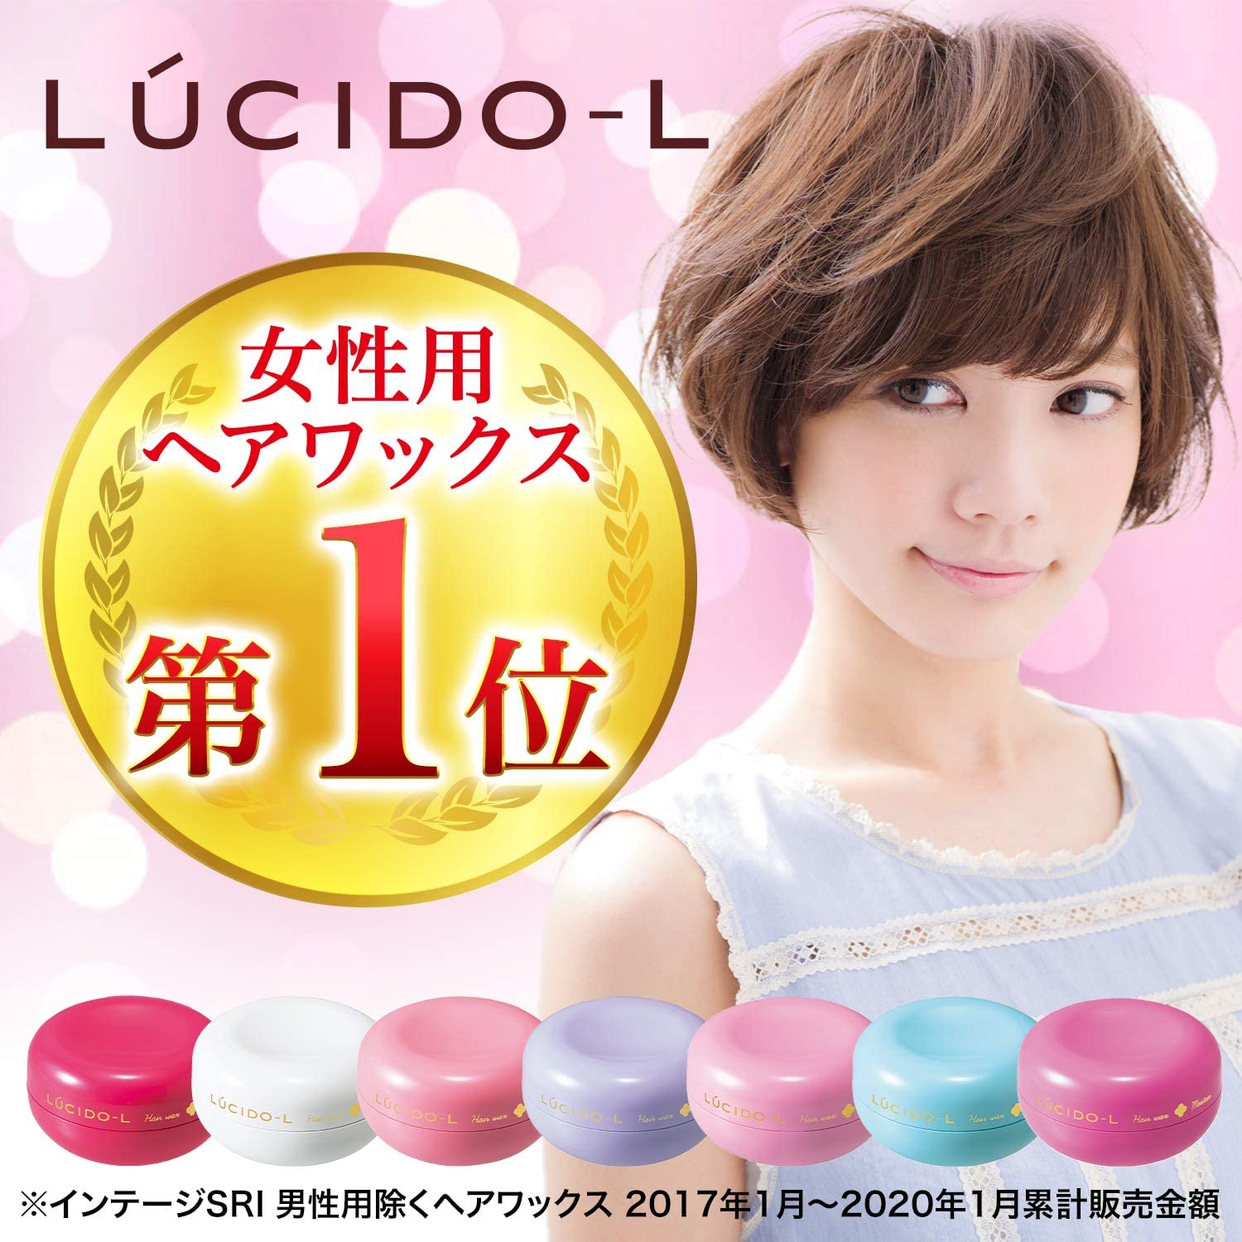 LUCIDO-L(ルシードエル) #ジューシーモイストワックスの商品画像サムネ2 